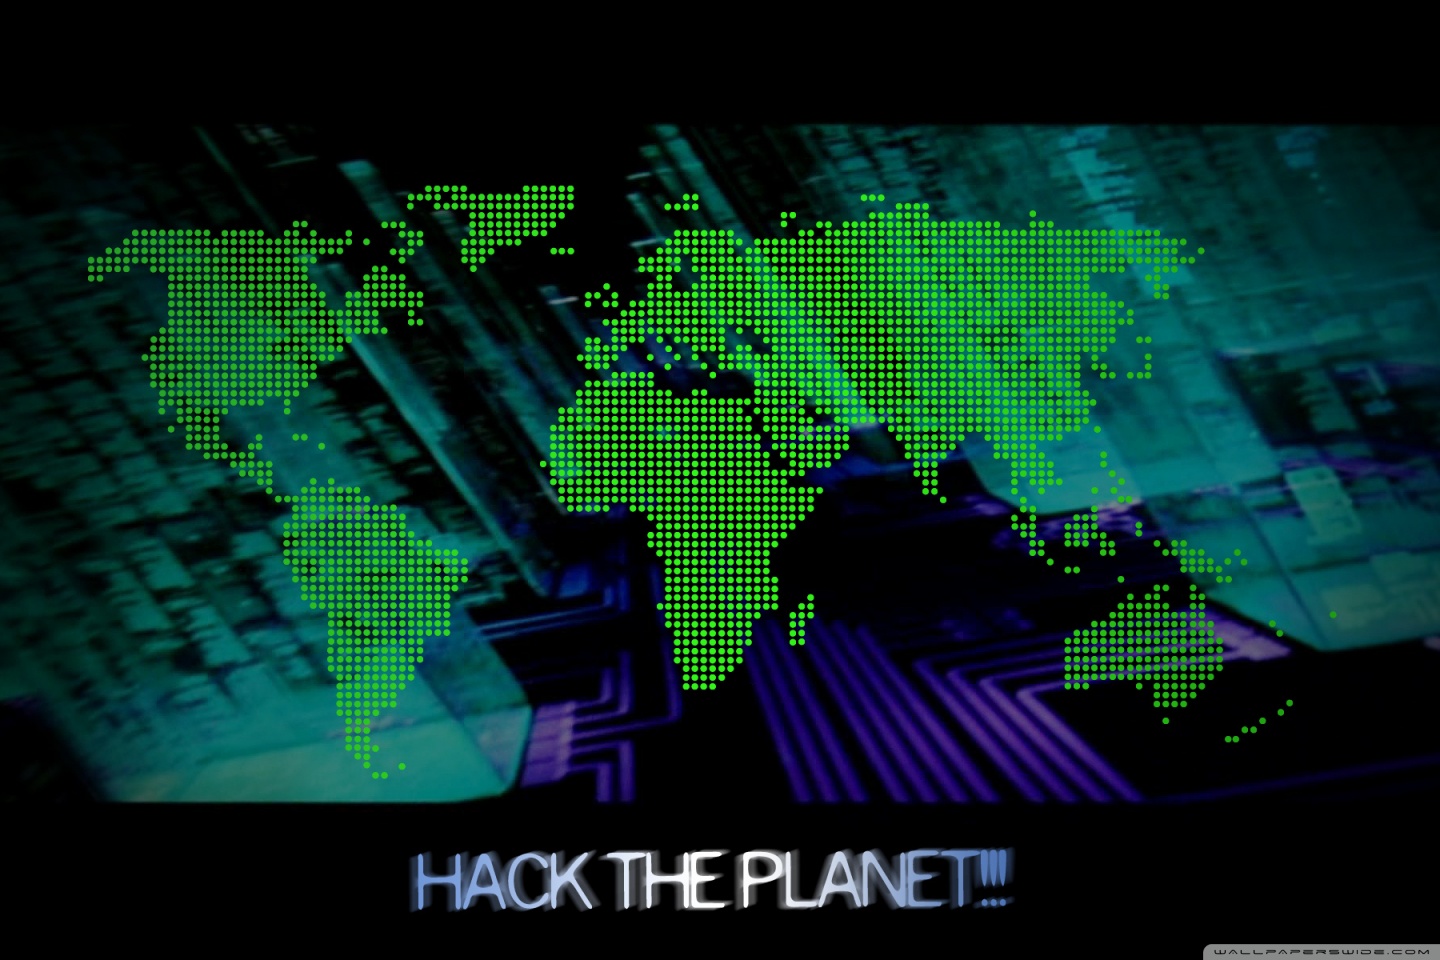 Hack the Planet Ultra HD Desktop Background Wallpaper for 4K UHD TV, Tablet